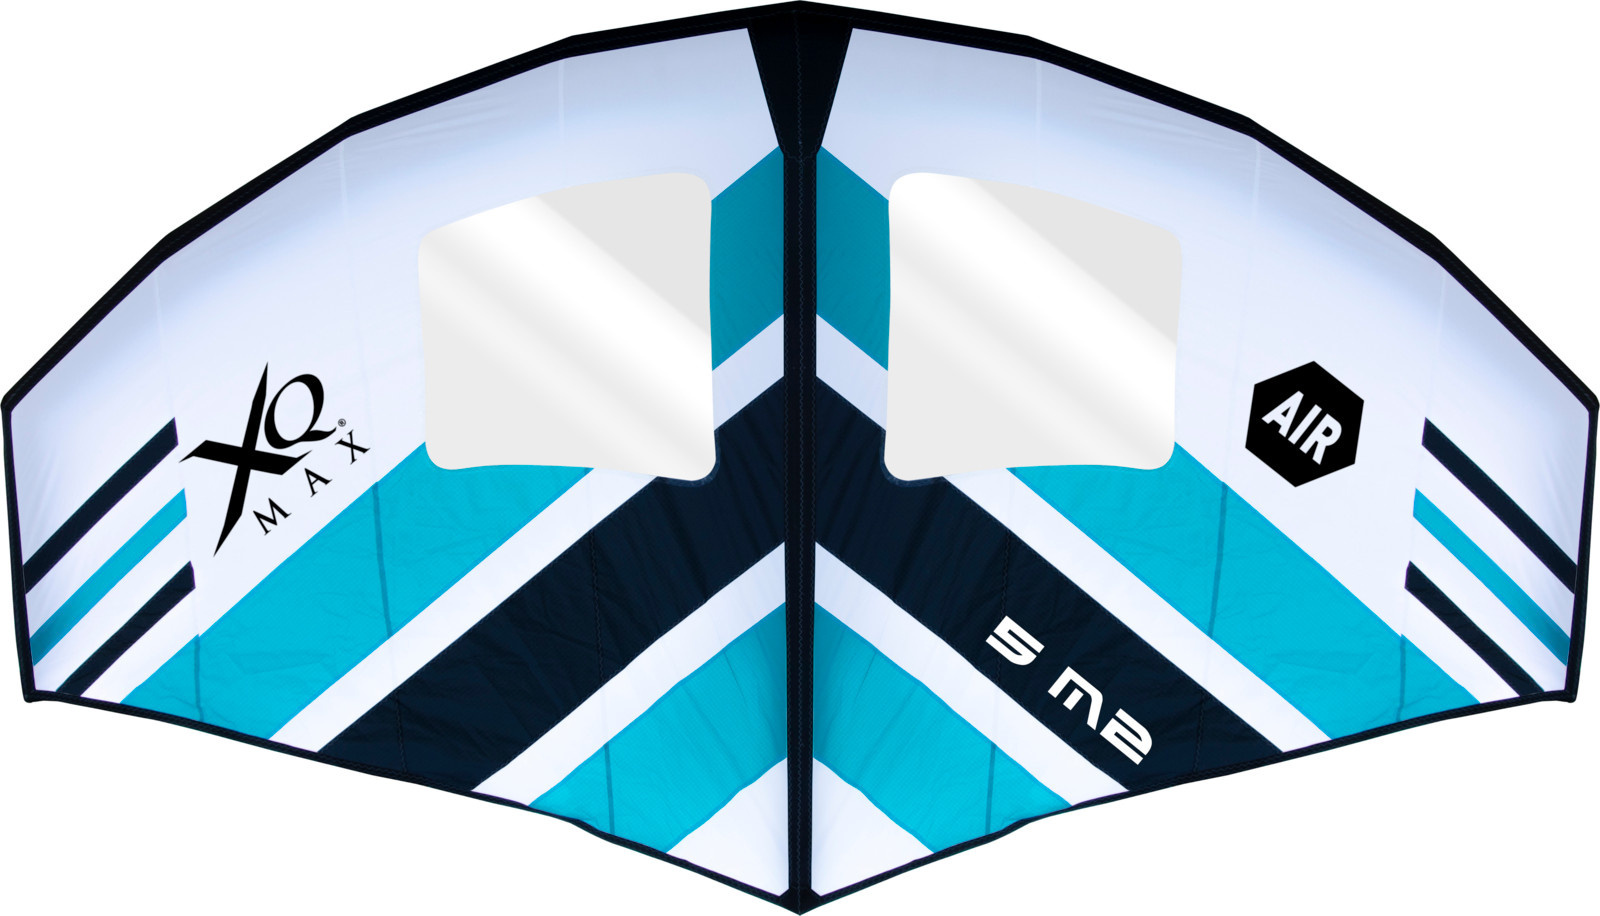 As I günstig Kaufen-XQ Max Wing 5m2 - 345 cm breit 200 cm hoch - Mit Tragetasche - Blau/Weiß. XQ Max Wing 5m2 - 345 cm breit 200 cm hoch - Mit Tragetasche - Blau/Weiß <![CDATA[Der XQMAX WING 5M2 wurde für diejenigen entwickelt, die beim Windsurfen nach der ultimat